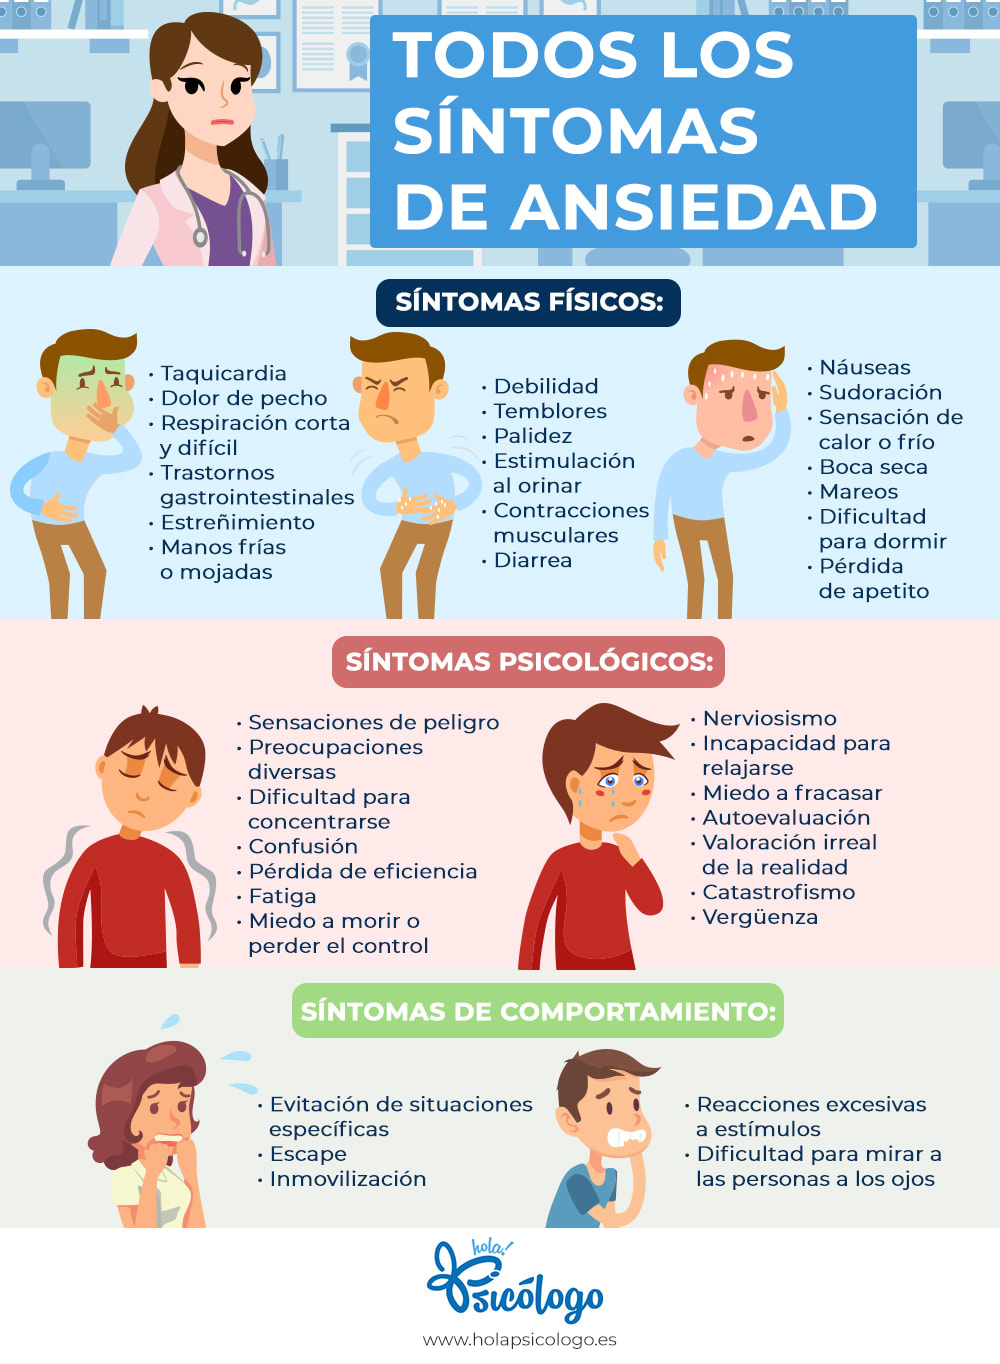 Todos los sintomas de ansiedad - Infografia HolaPsicologo